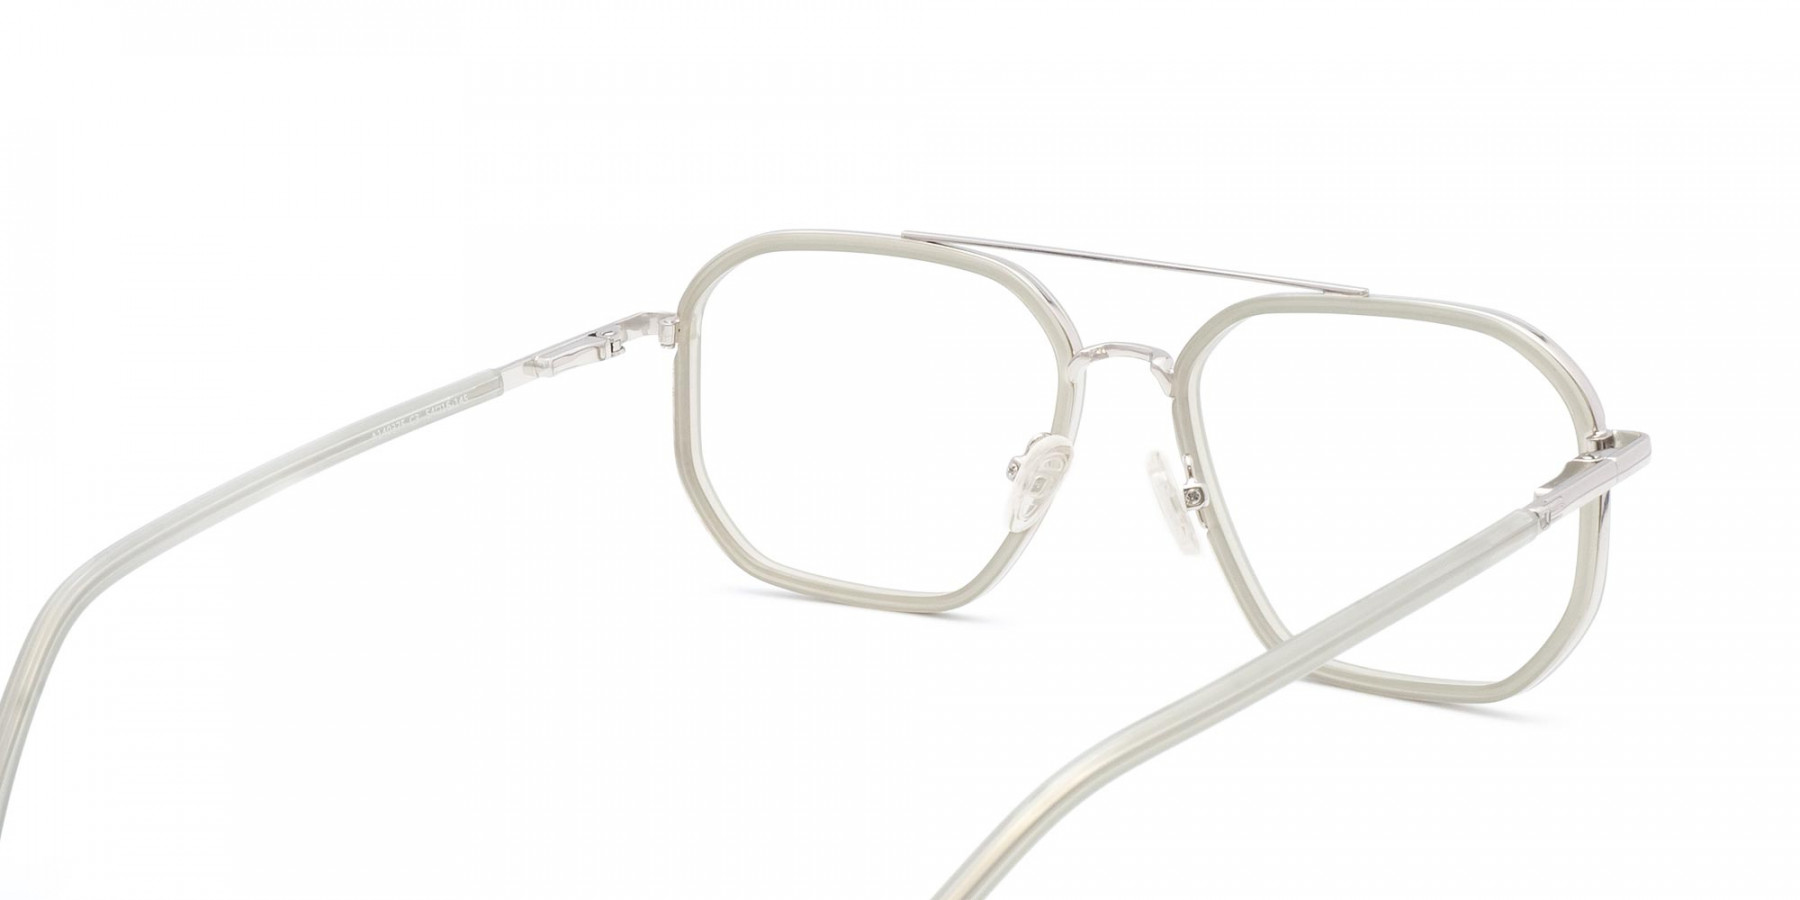 SOHO 3 - Double Nose Bridge Glasses | Specscart.®